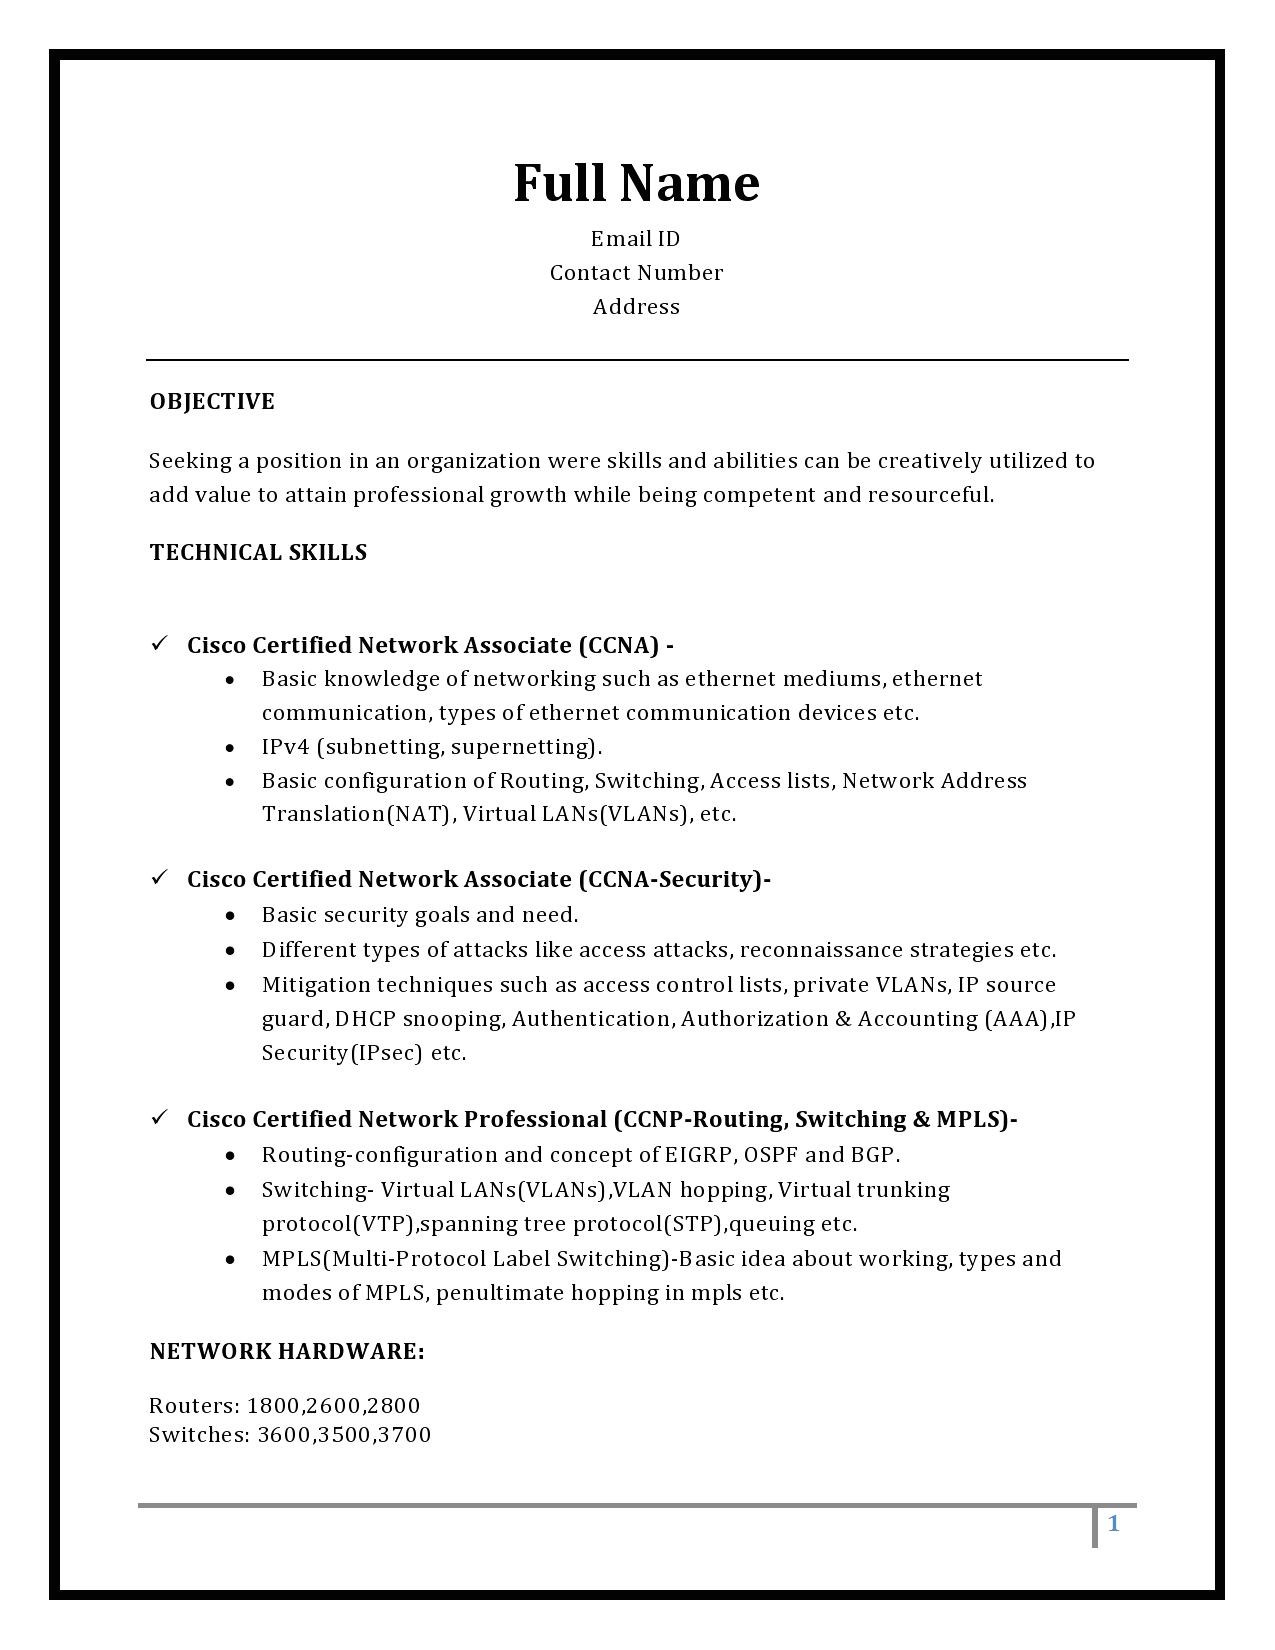 ccnp resume